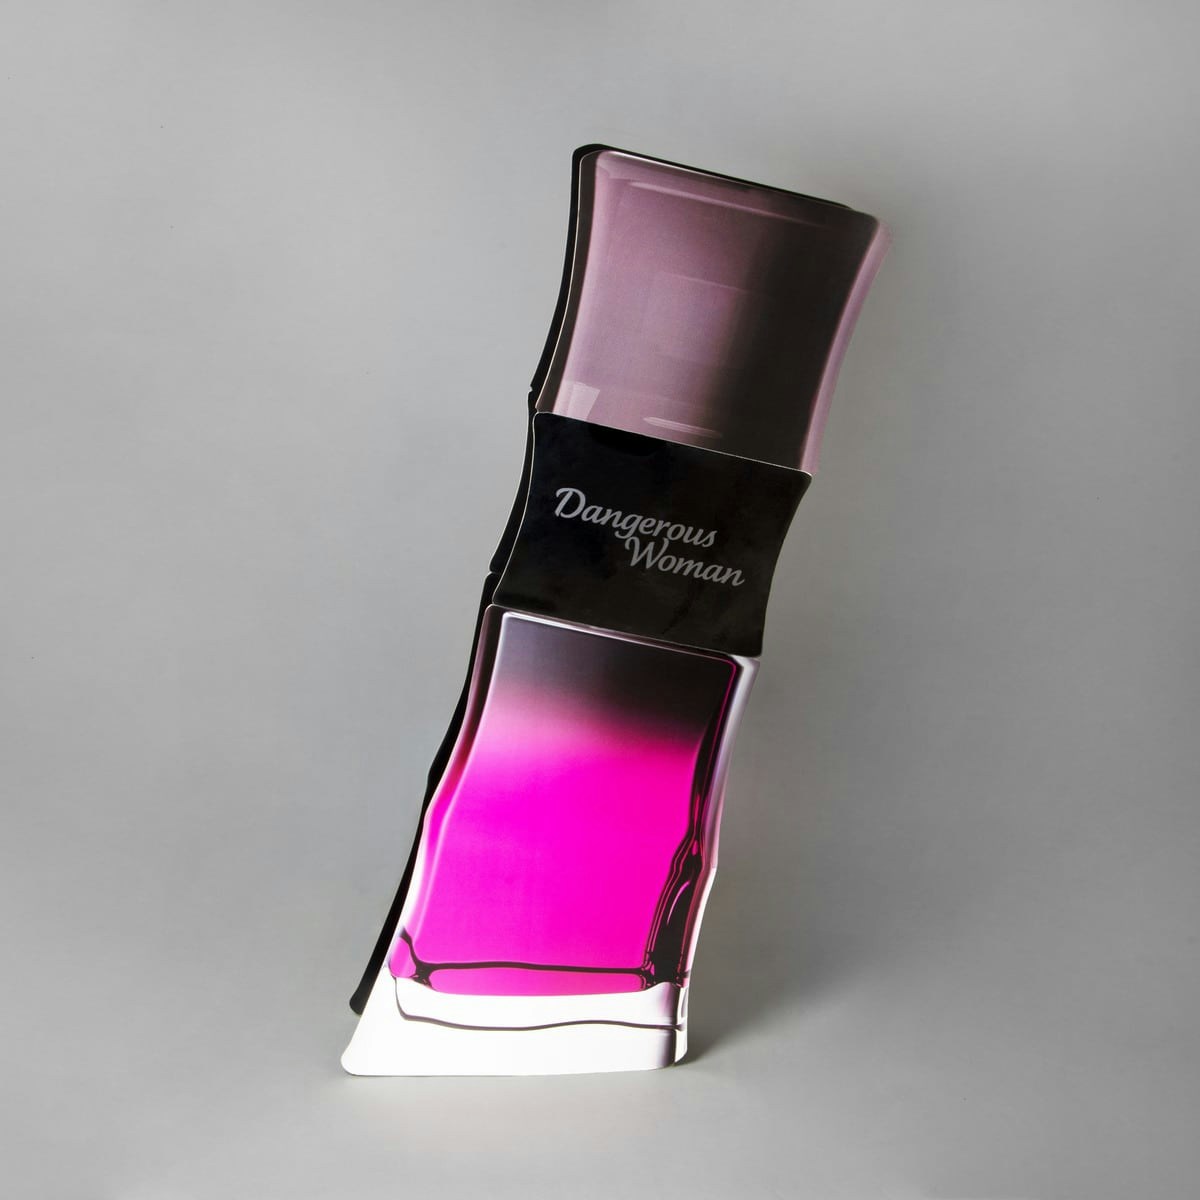 POS floor display perfume made of KROMA